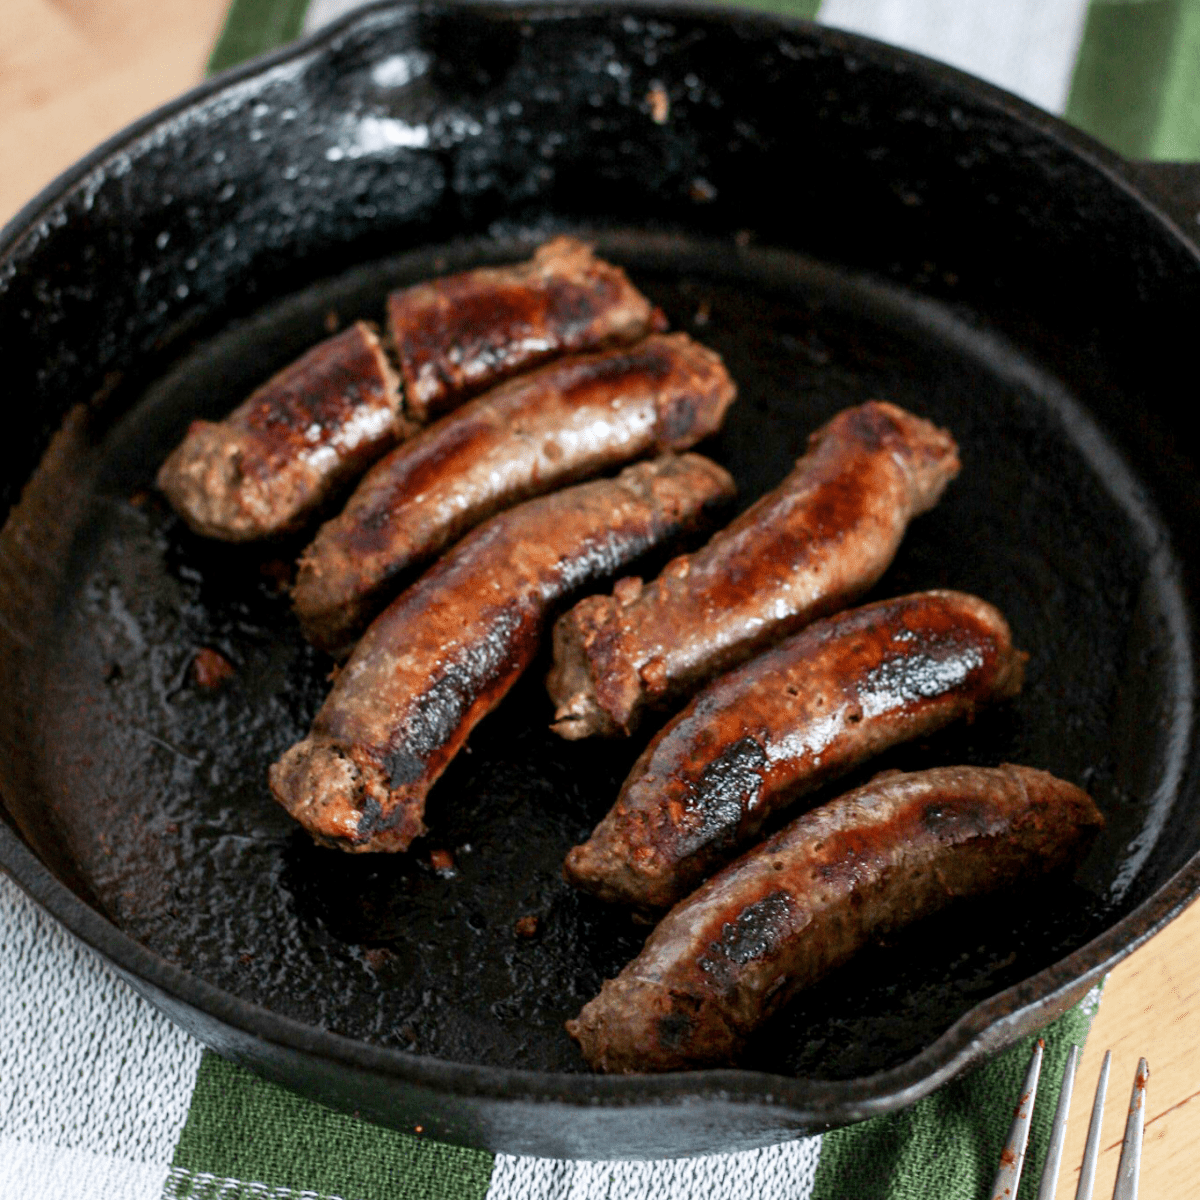 pan of sausages